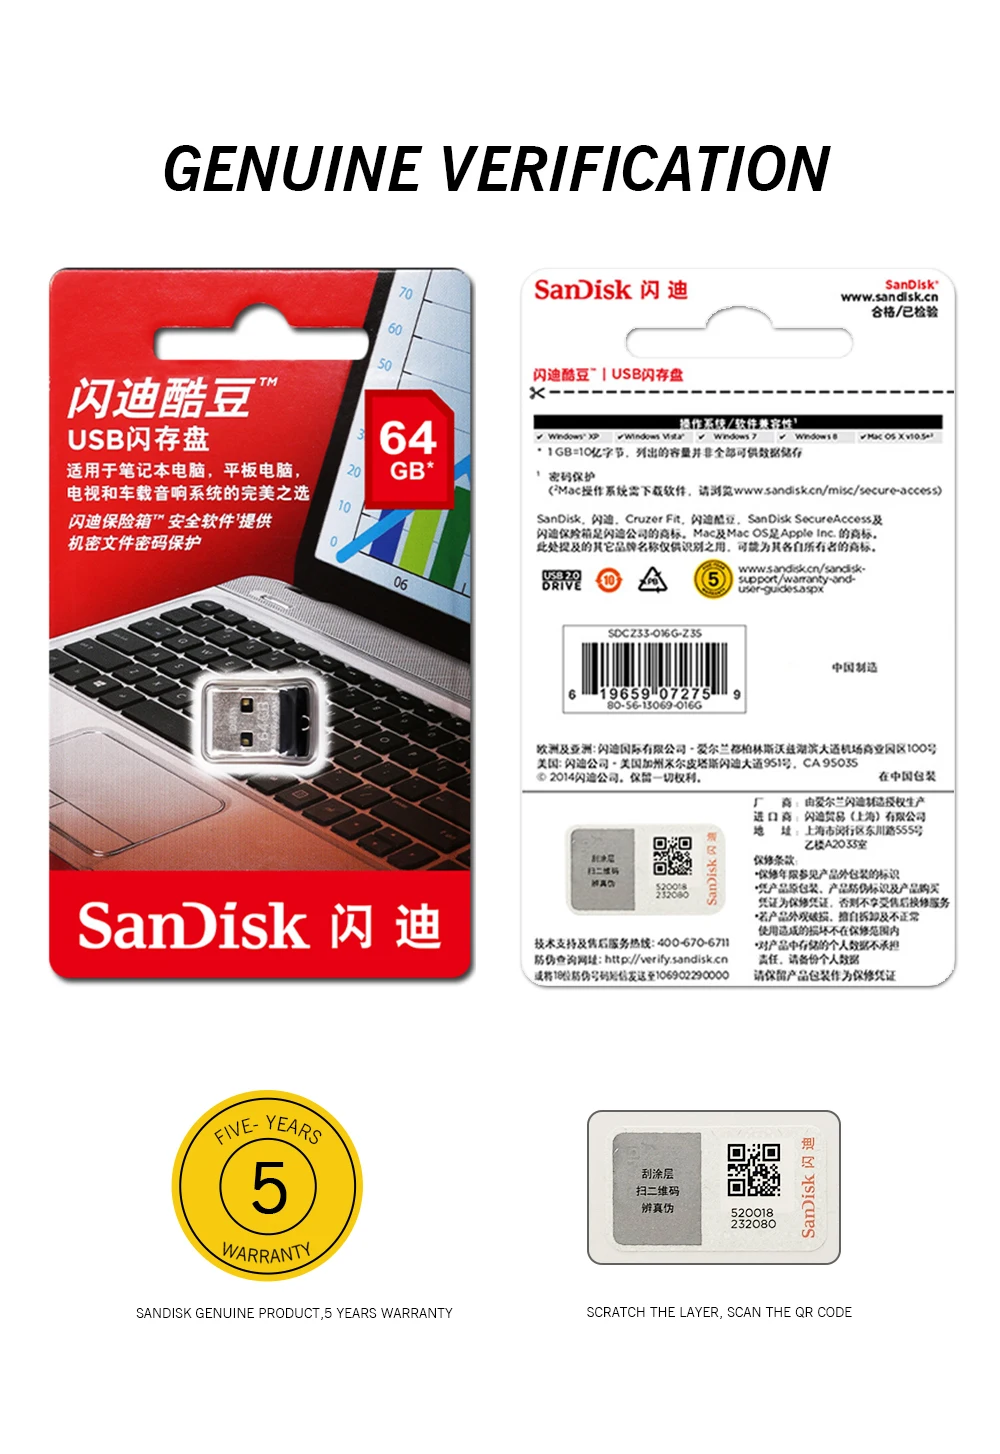 SanDisk Cruzer Fit CZ33 супер мини-usb флеш-накопитель 64 ГБ USB 2,0 sandisk флеш-накопитель 32 ГБ флеш-накопитель s 16 Гб U диск